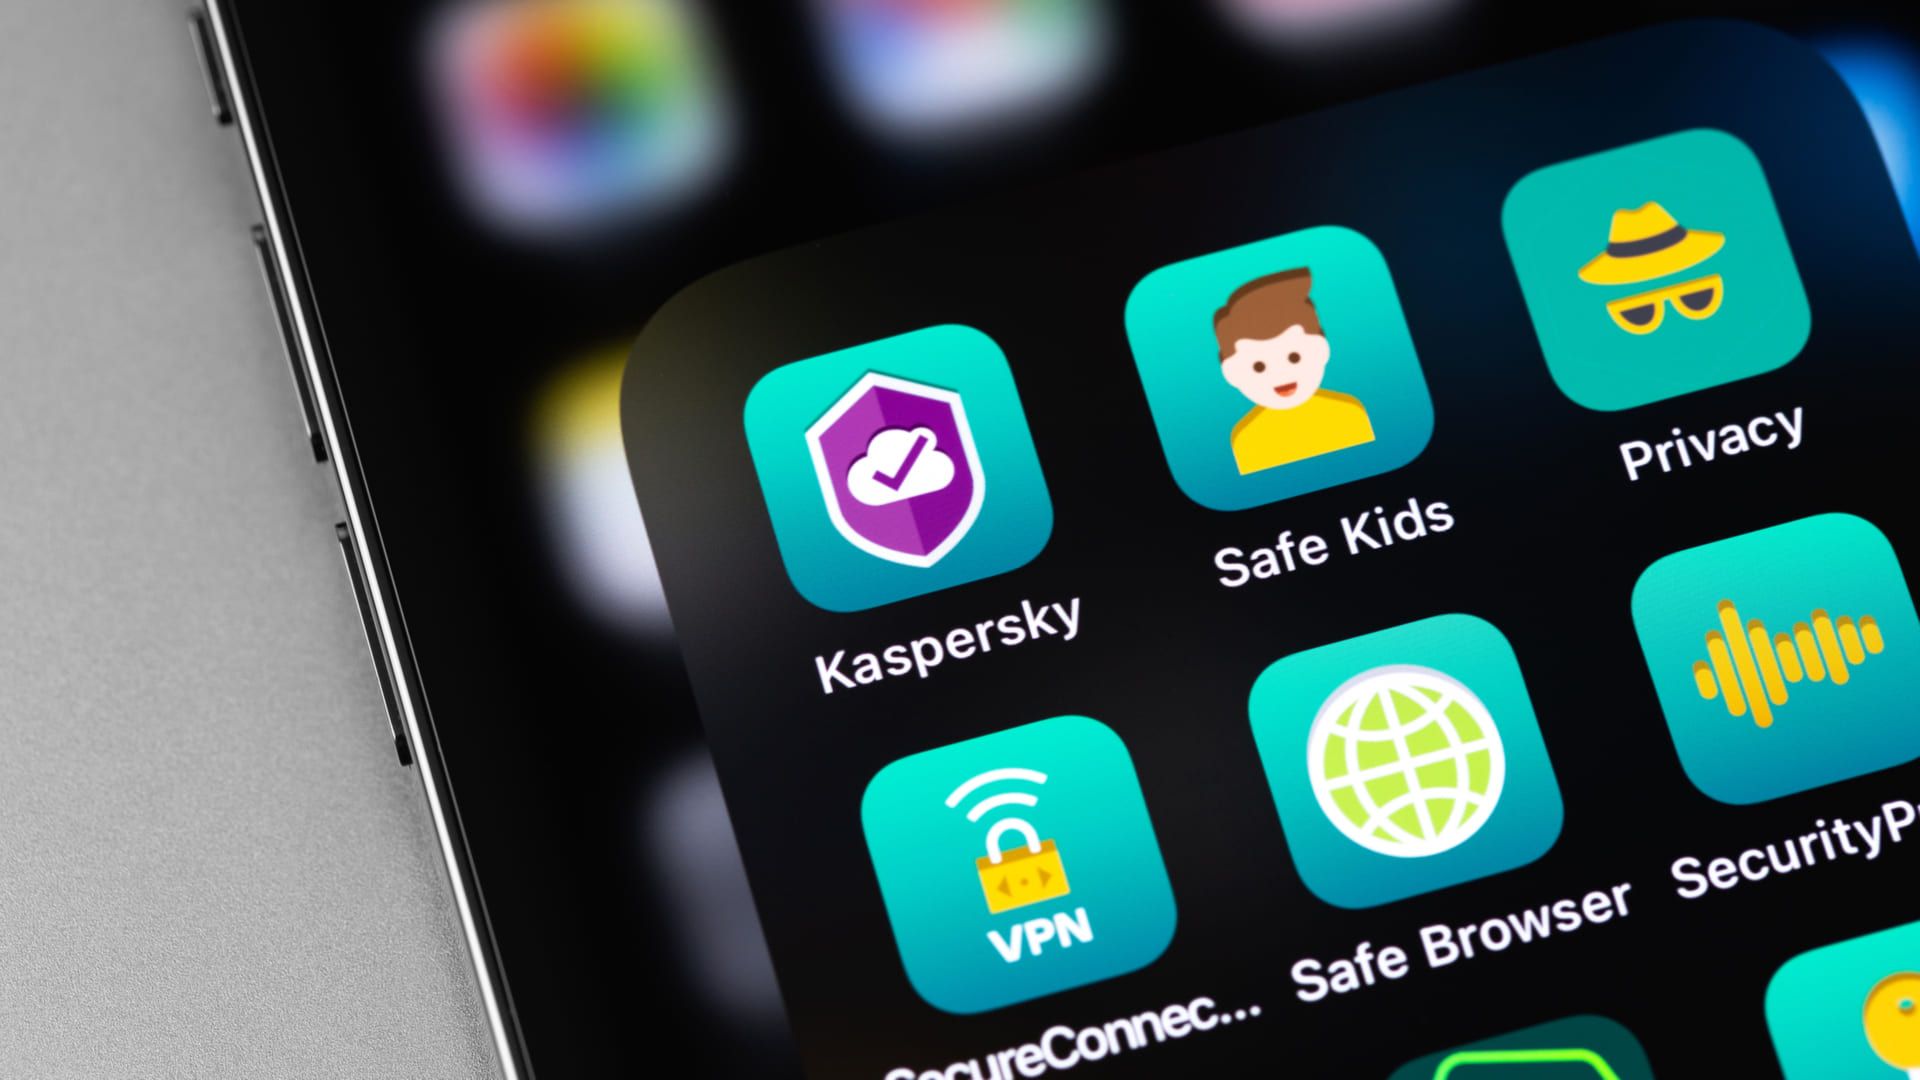 Foto mostrando tela de celular com lista de aplicativos, focando no app Kaspersky, considerado um dos melhores antivírus